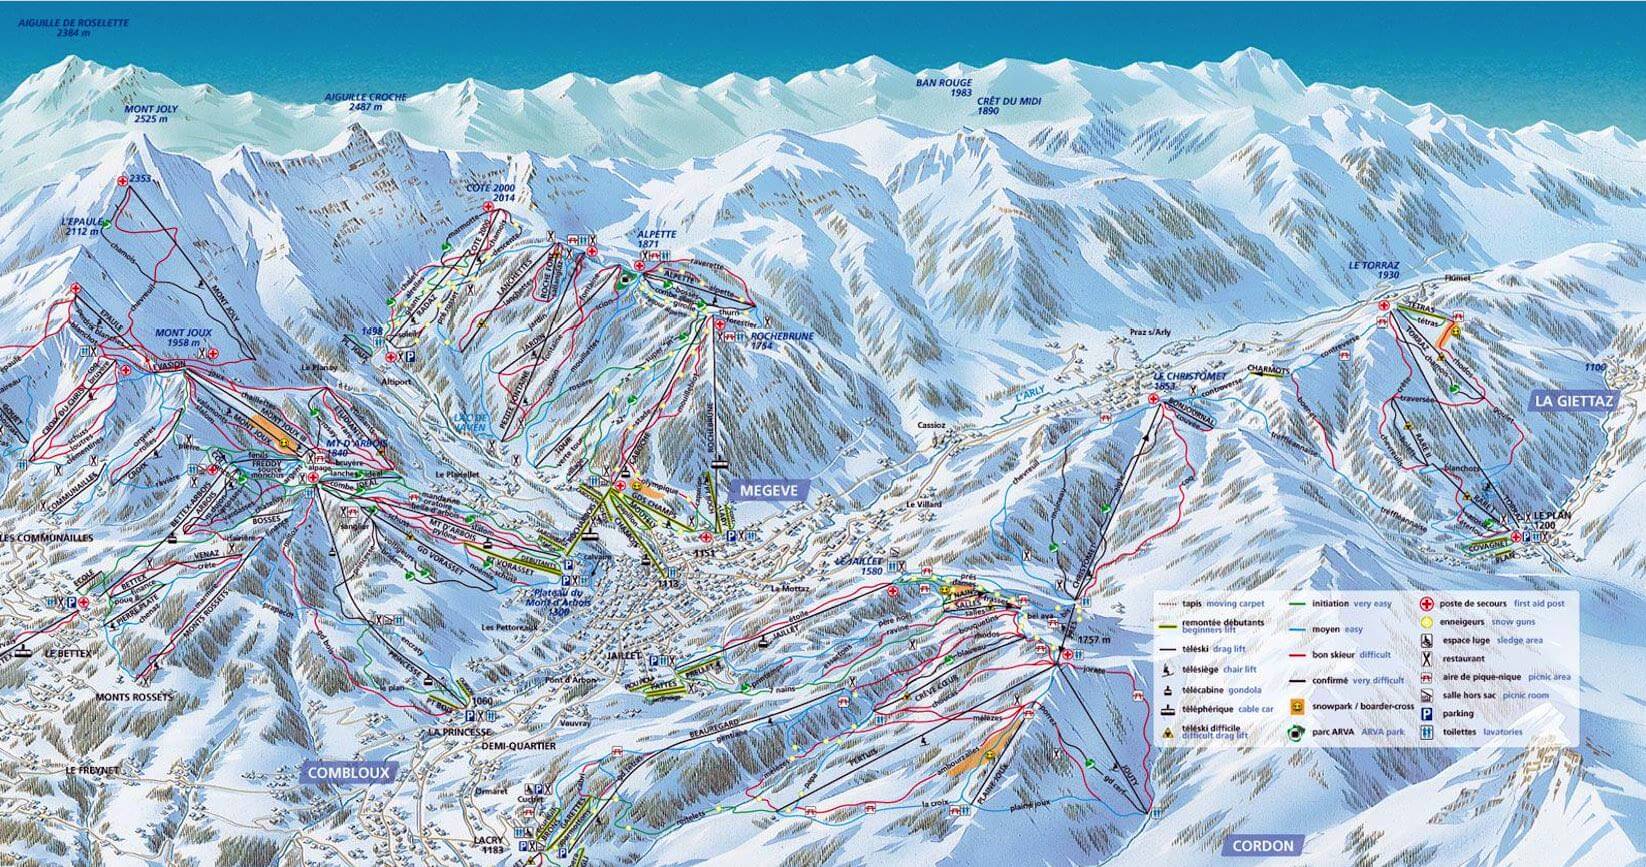 Plan des pistes de ski de megeve alpes françaises